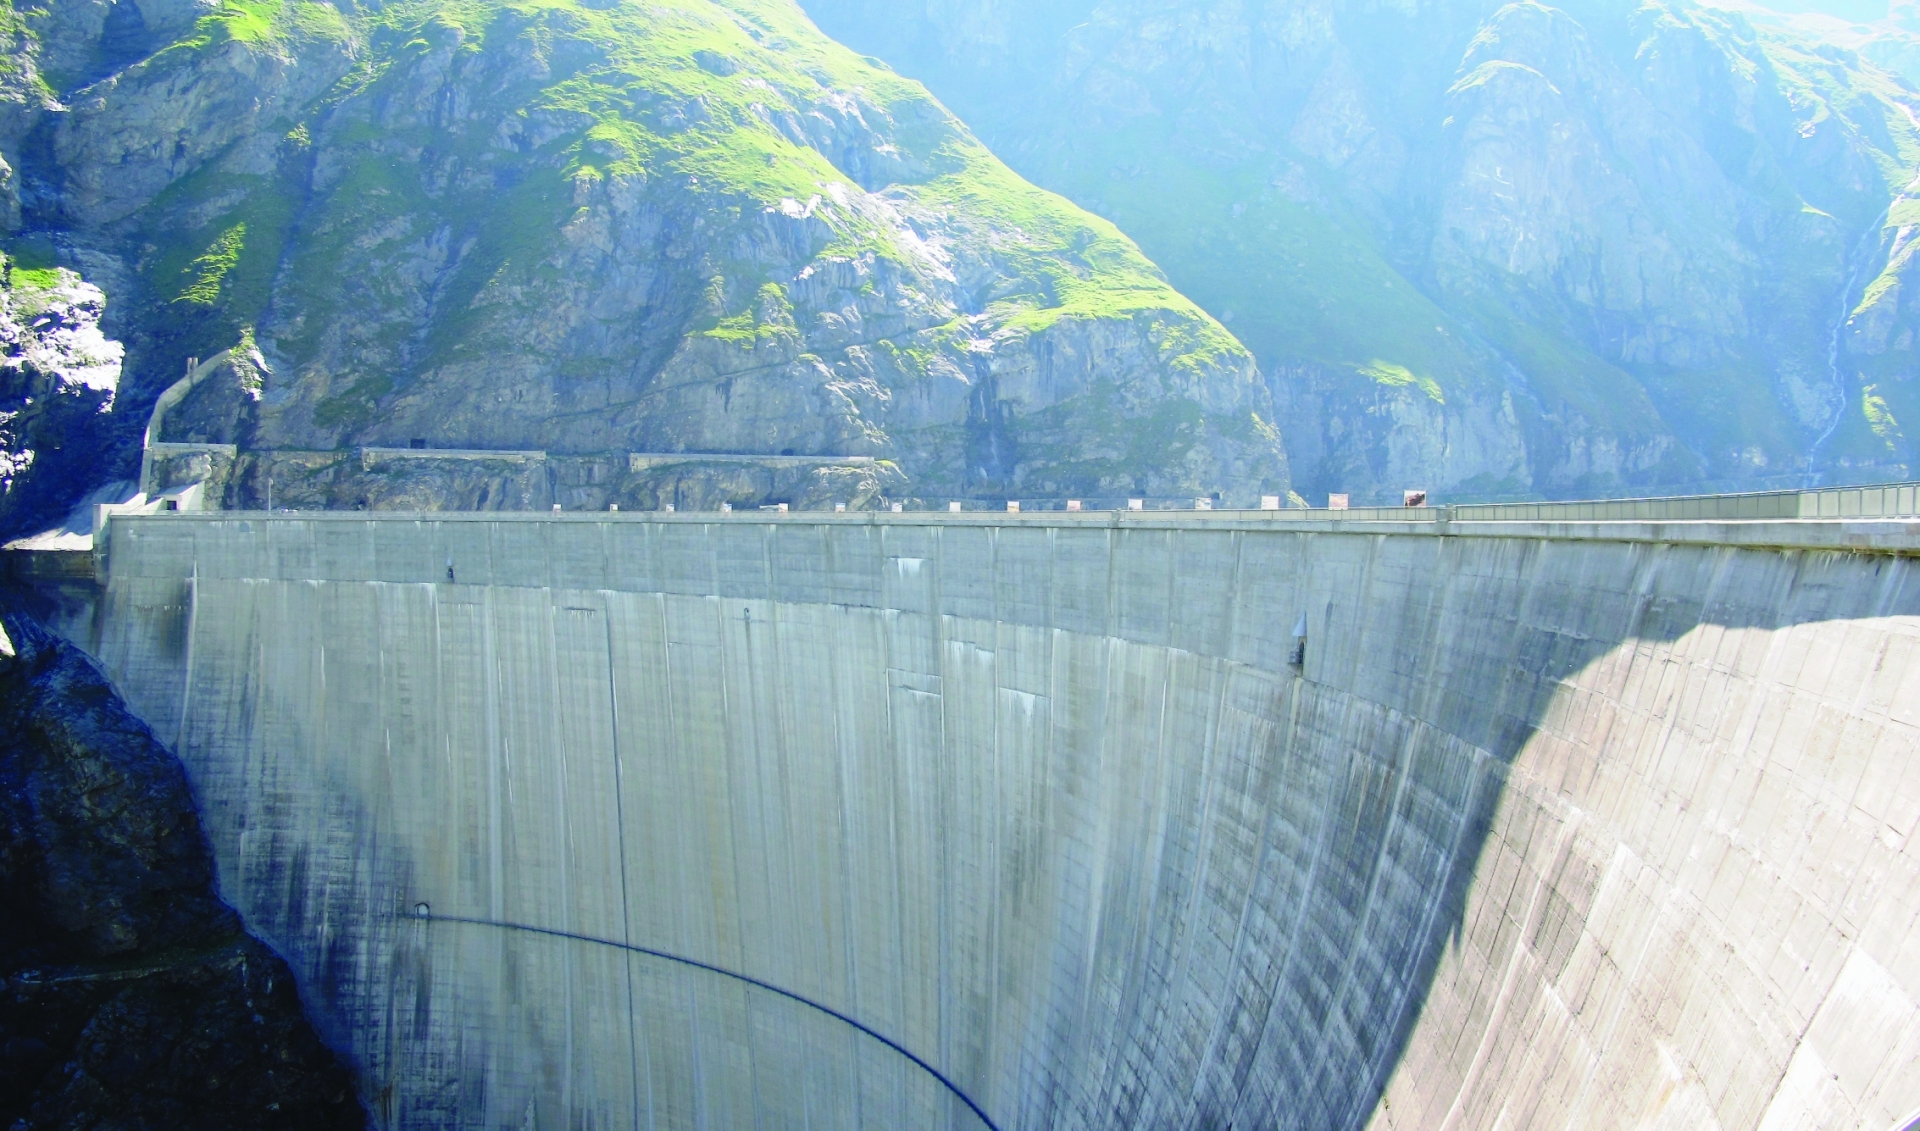 Les revenus hydroélectriques devraient augmenter ces prochaines années, selon une étude de la HES-SO Valais.